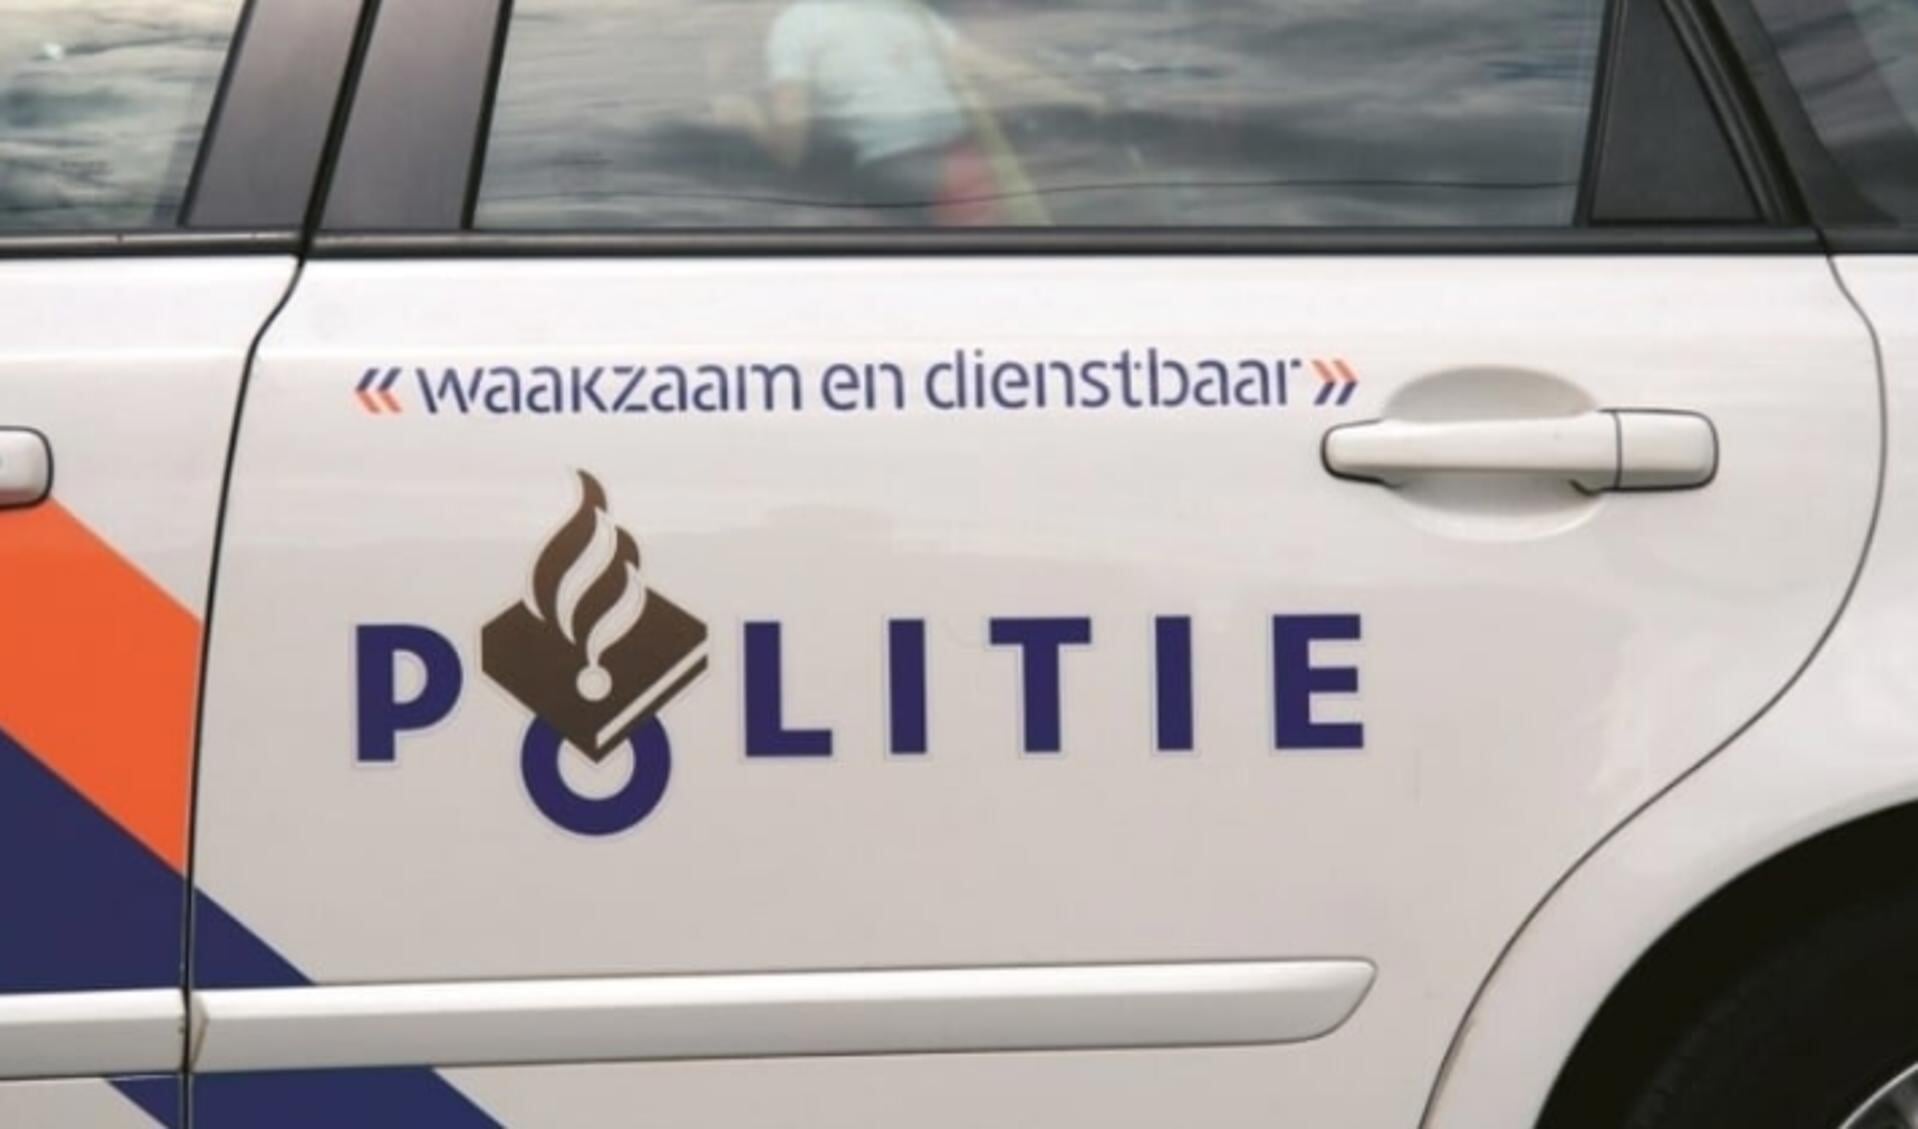  De gemeente heeft samen met onder meer politie meerdere bedrijfspanden in de Waarderpolder doorgelicht.  